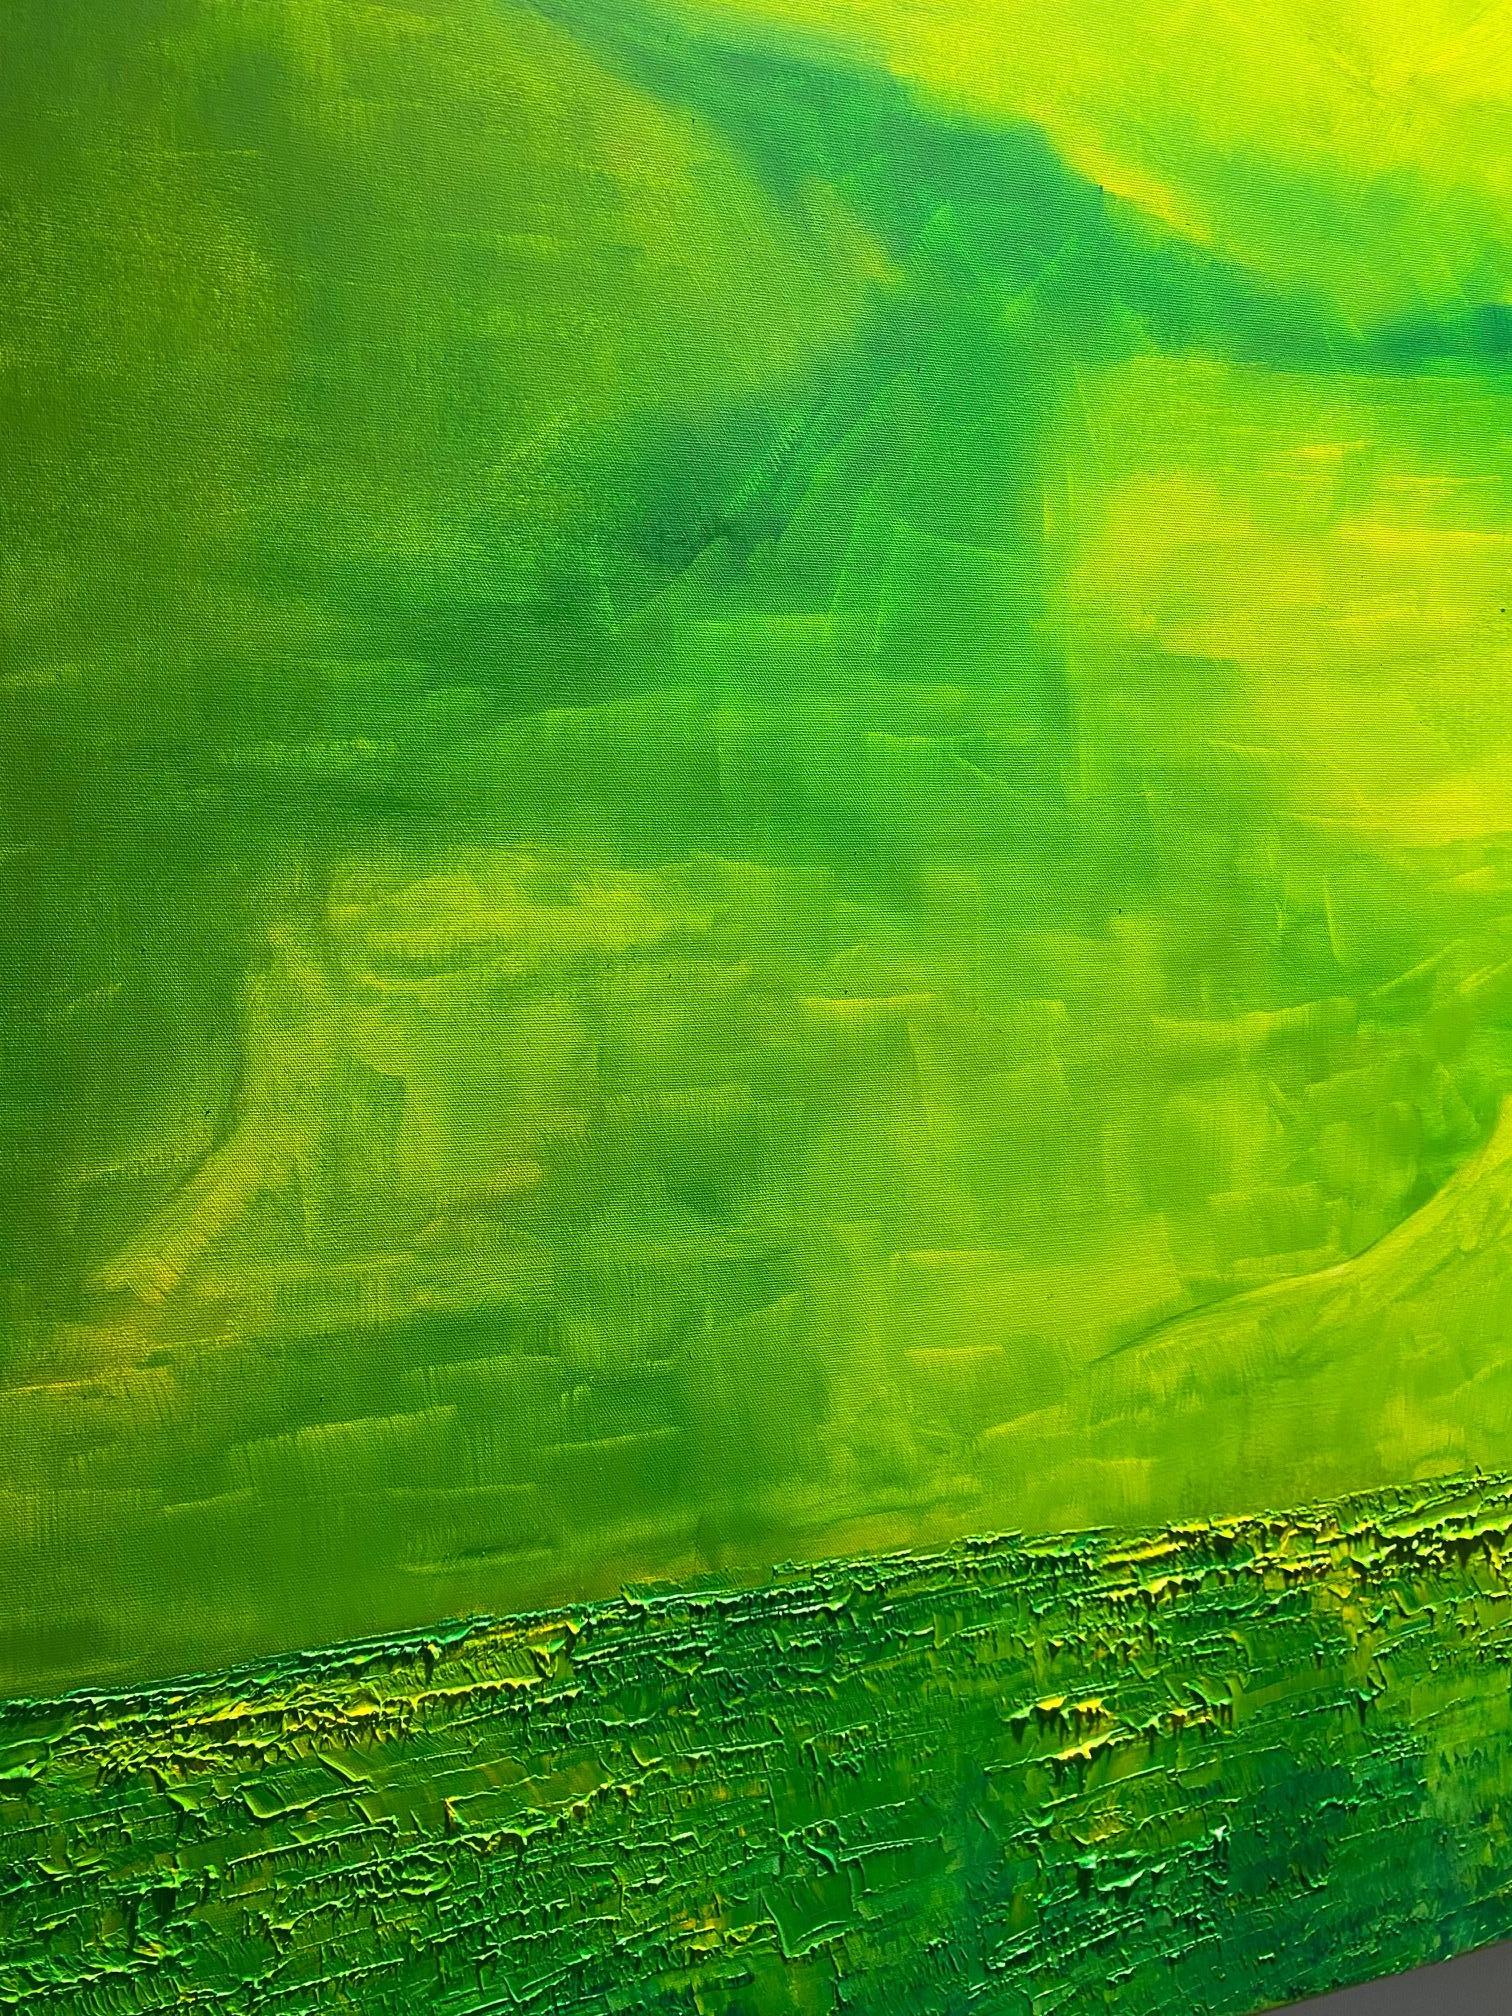 Sans titre - peinture abstraite expressionniste contemporaine, paysage vert - Vert Abstract Painting par Willi Bucher